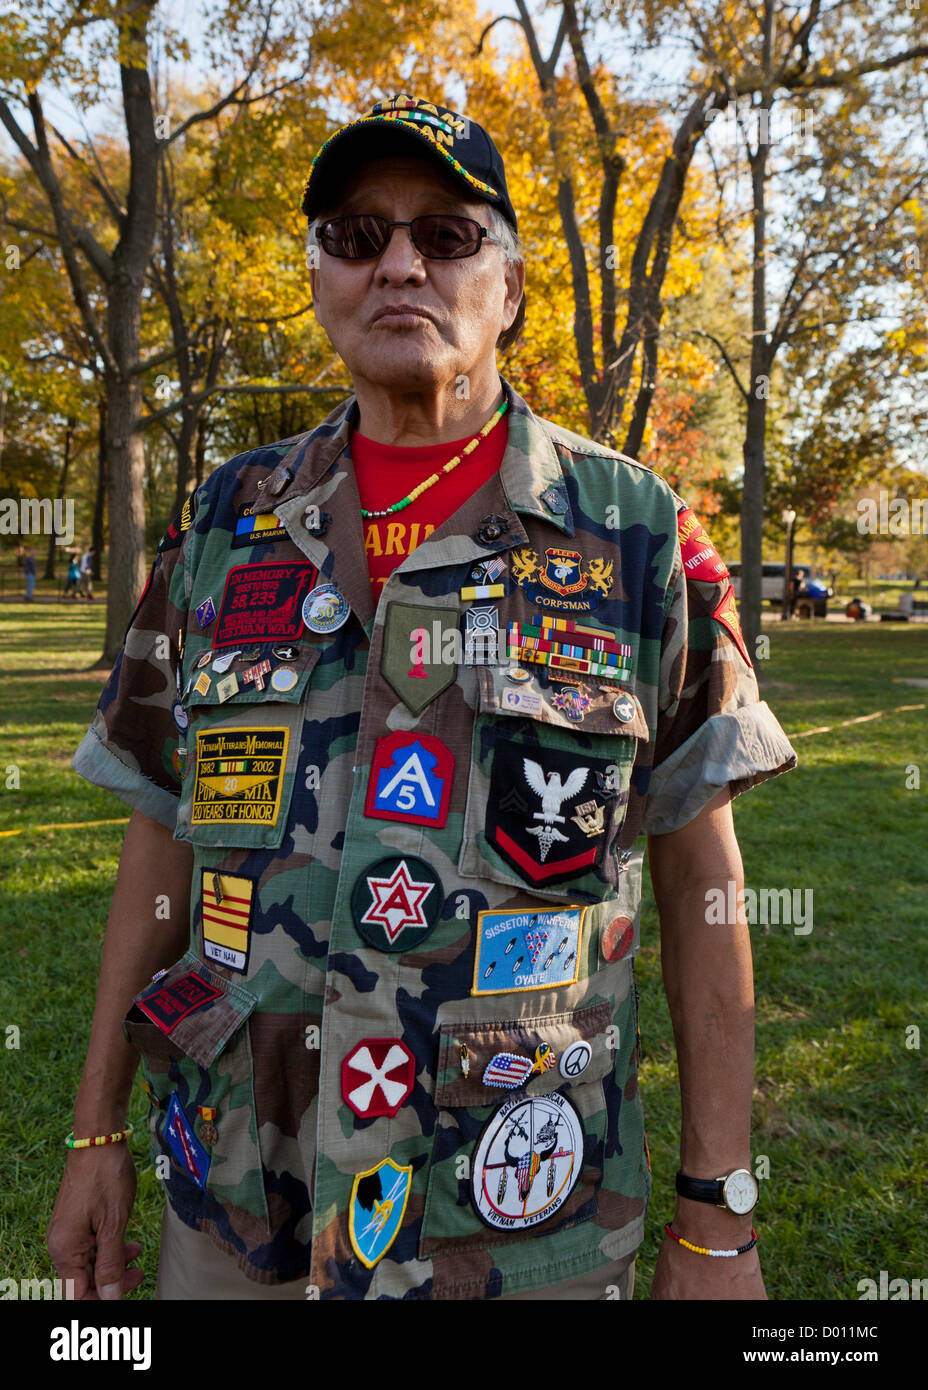 Nous American-Indian vétéran de la guerre du Vietnam avec des médailles et distinctions Banque D'Images